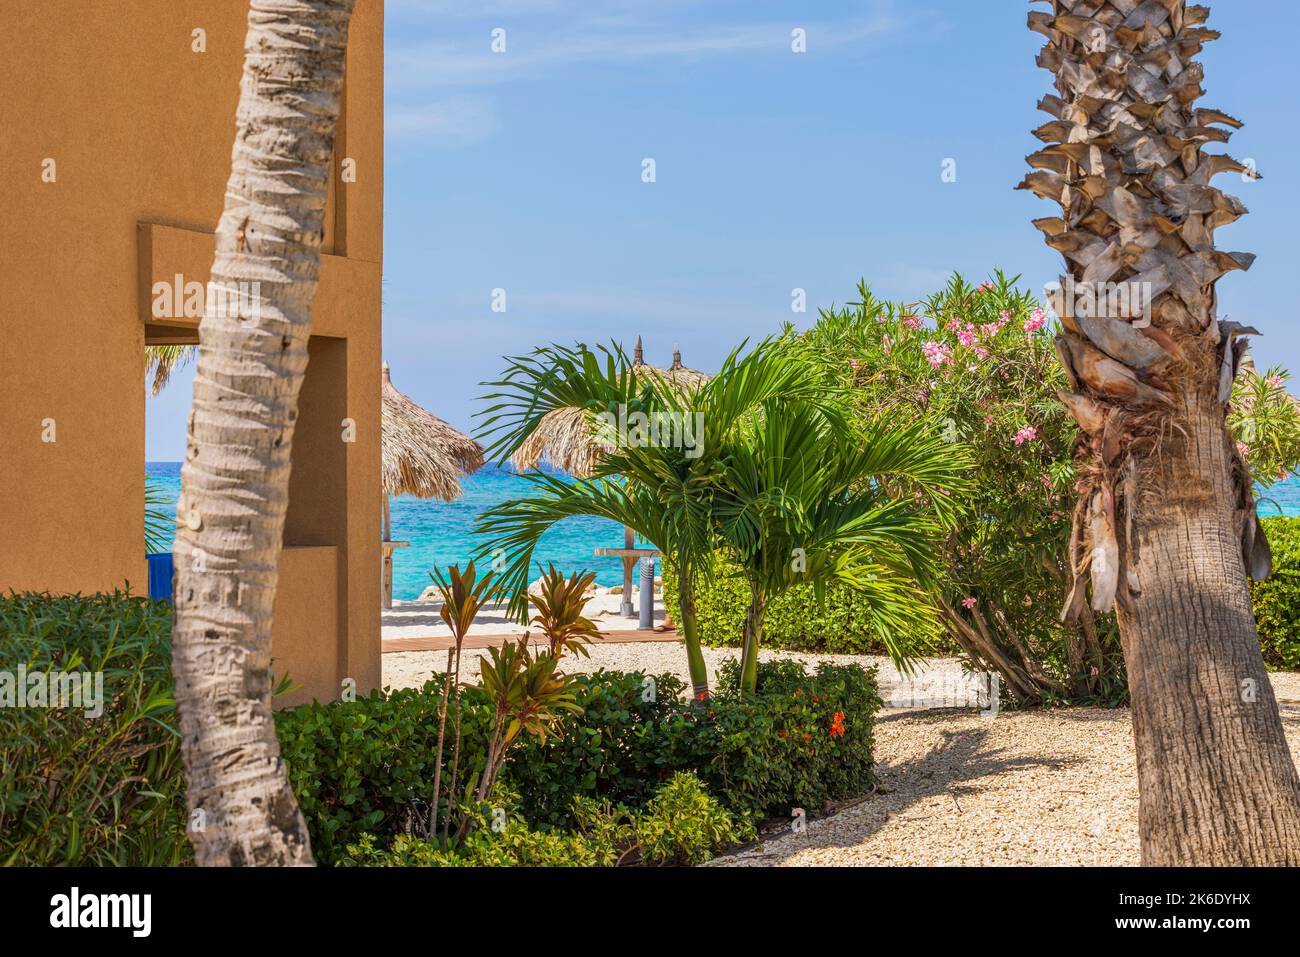 Vista increíble del edificio del hotel y palmeras verdes en la playa de arena blanca con superficie de agua turquesa y cielo azul nublado en el fondo. Aruba. Foto de stock